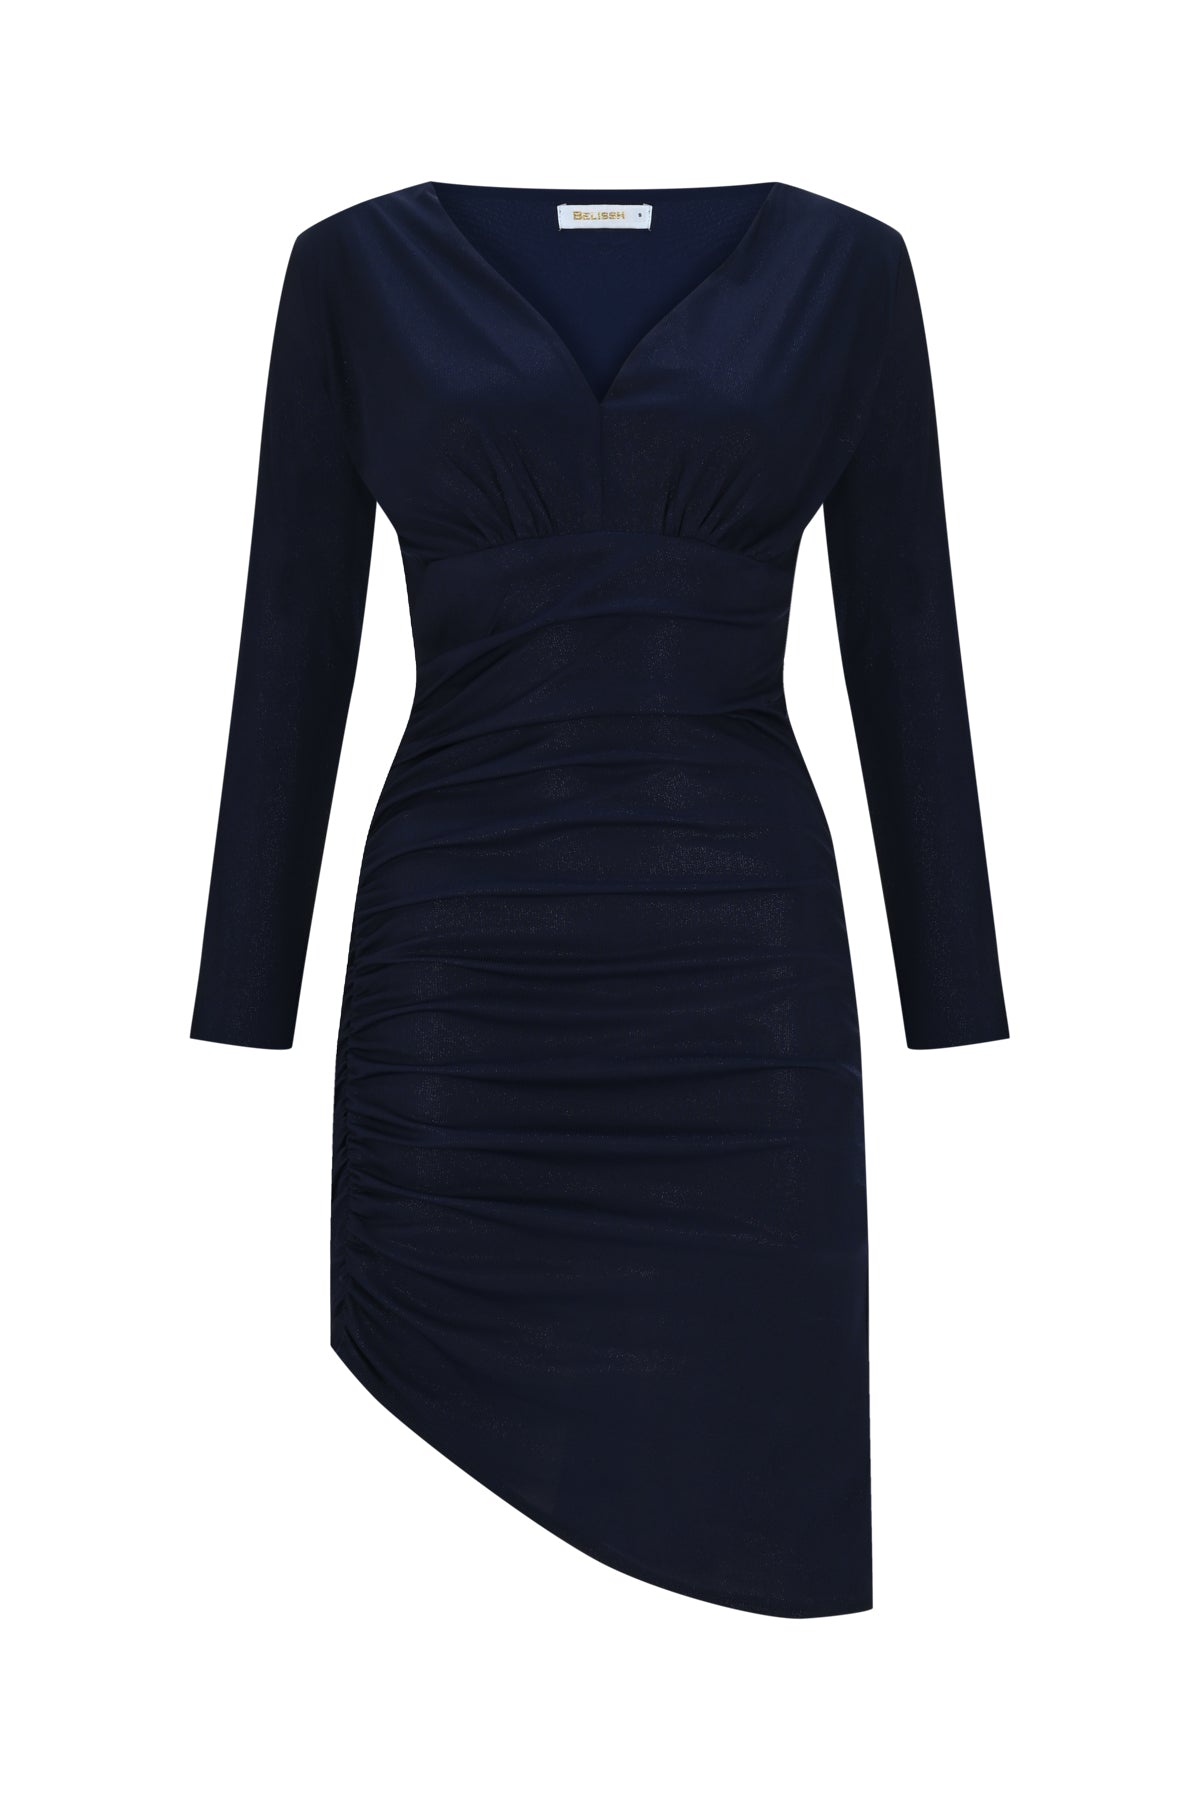 Schimmerndes drapiertes Kleid mit asymmetrischem Saum und V-Ausschnitt – Marineblau